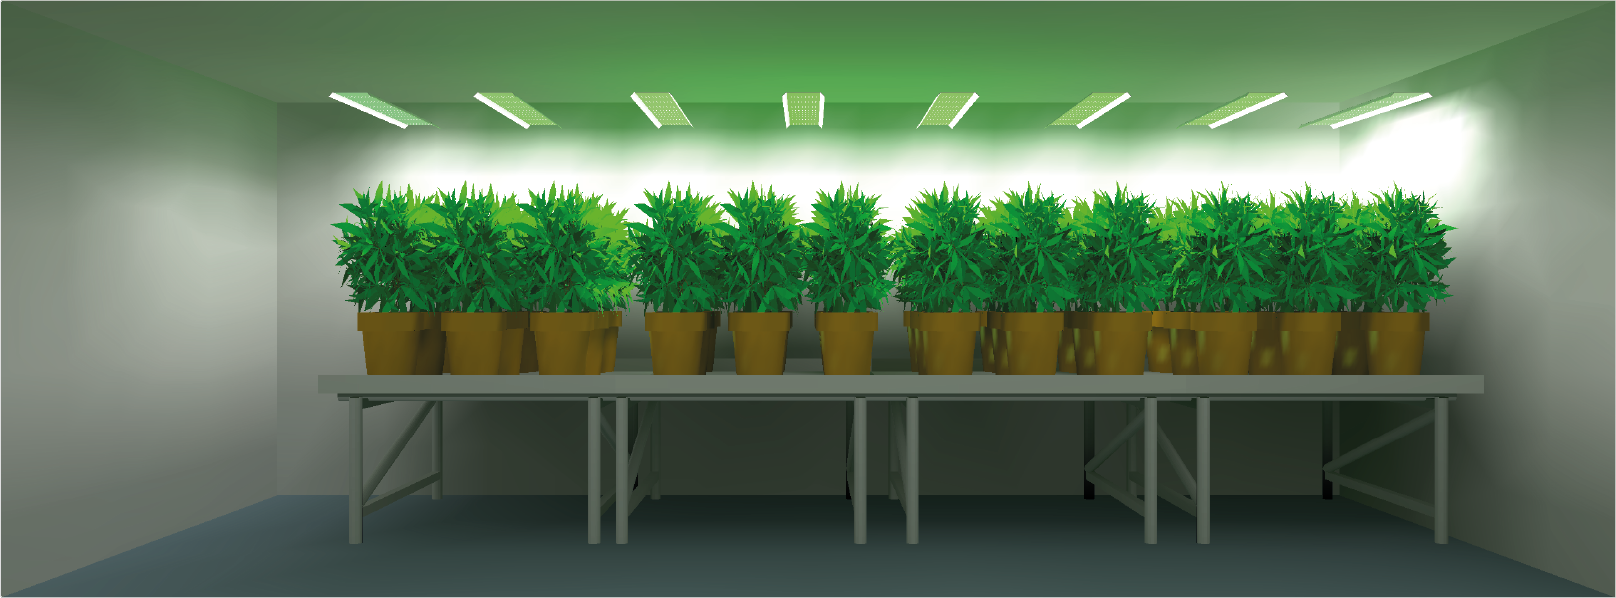 Planifique su proyecto de cultivo - Simulación de luz y asesoramiento para un cultivo interior eficiente hortiONE600 120x480 plants Full 1